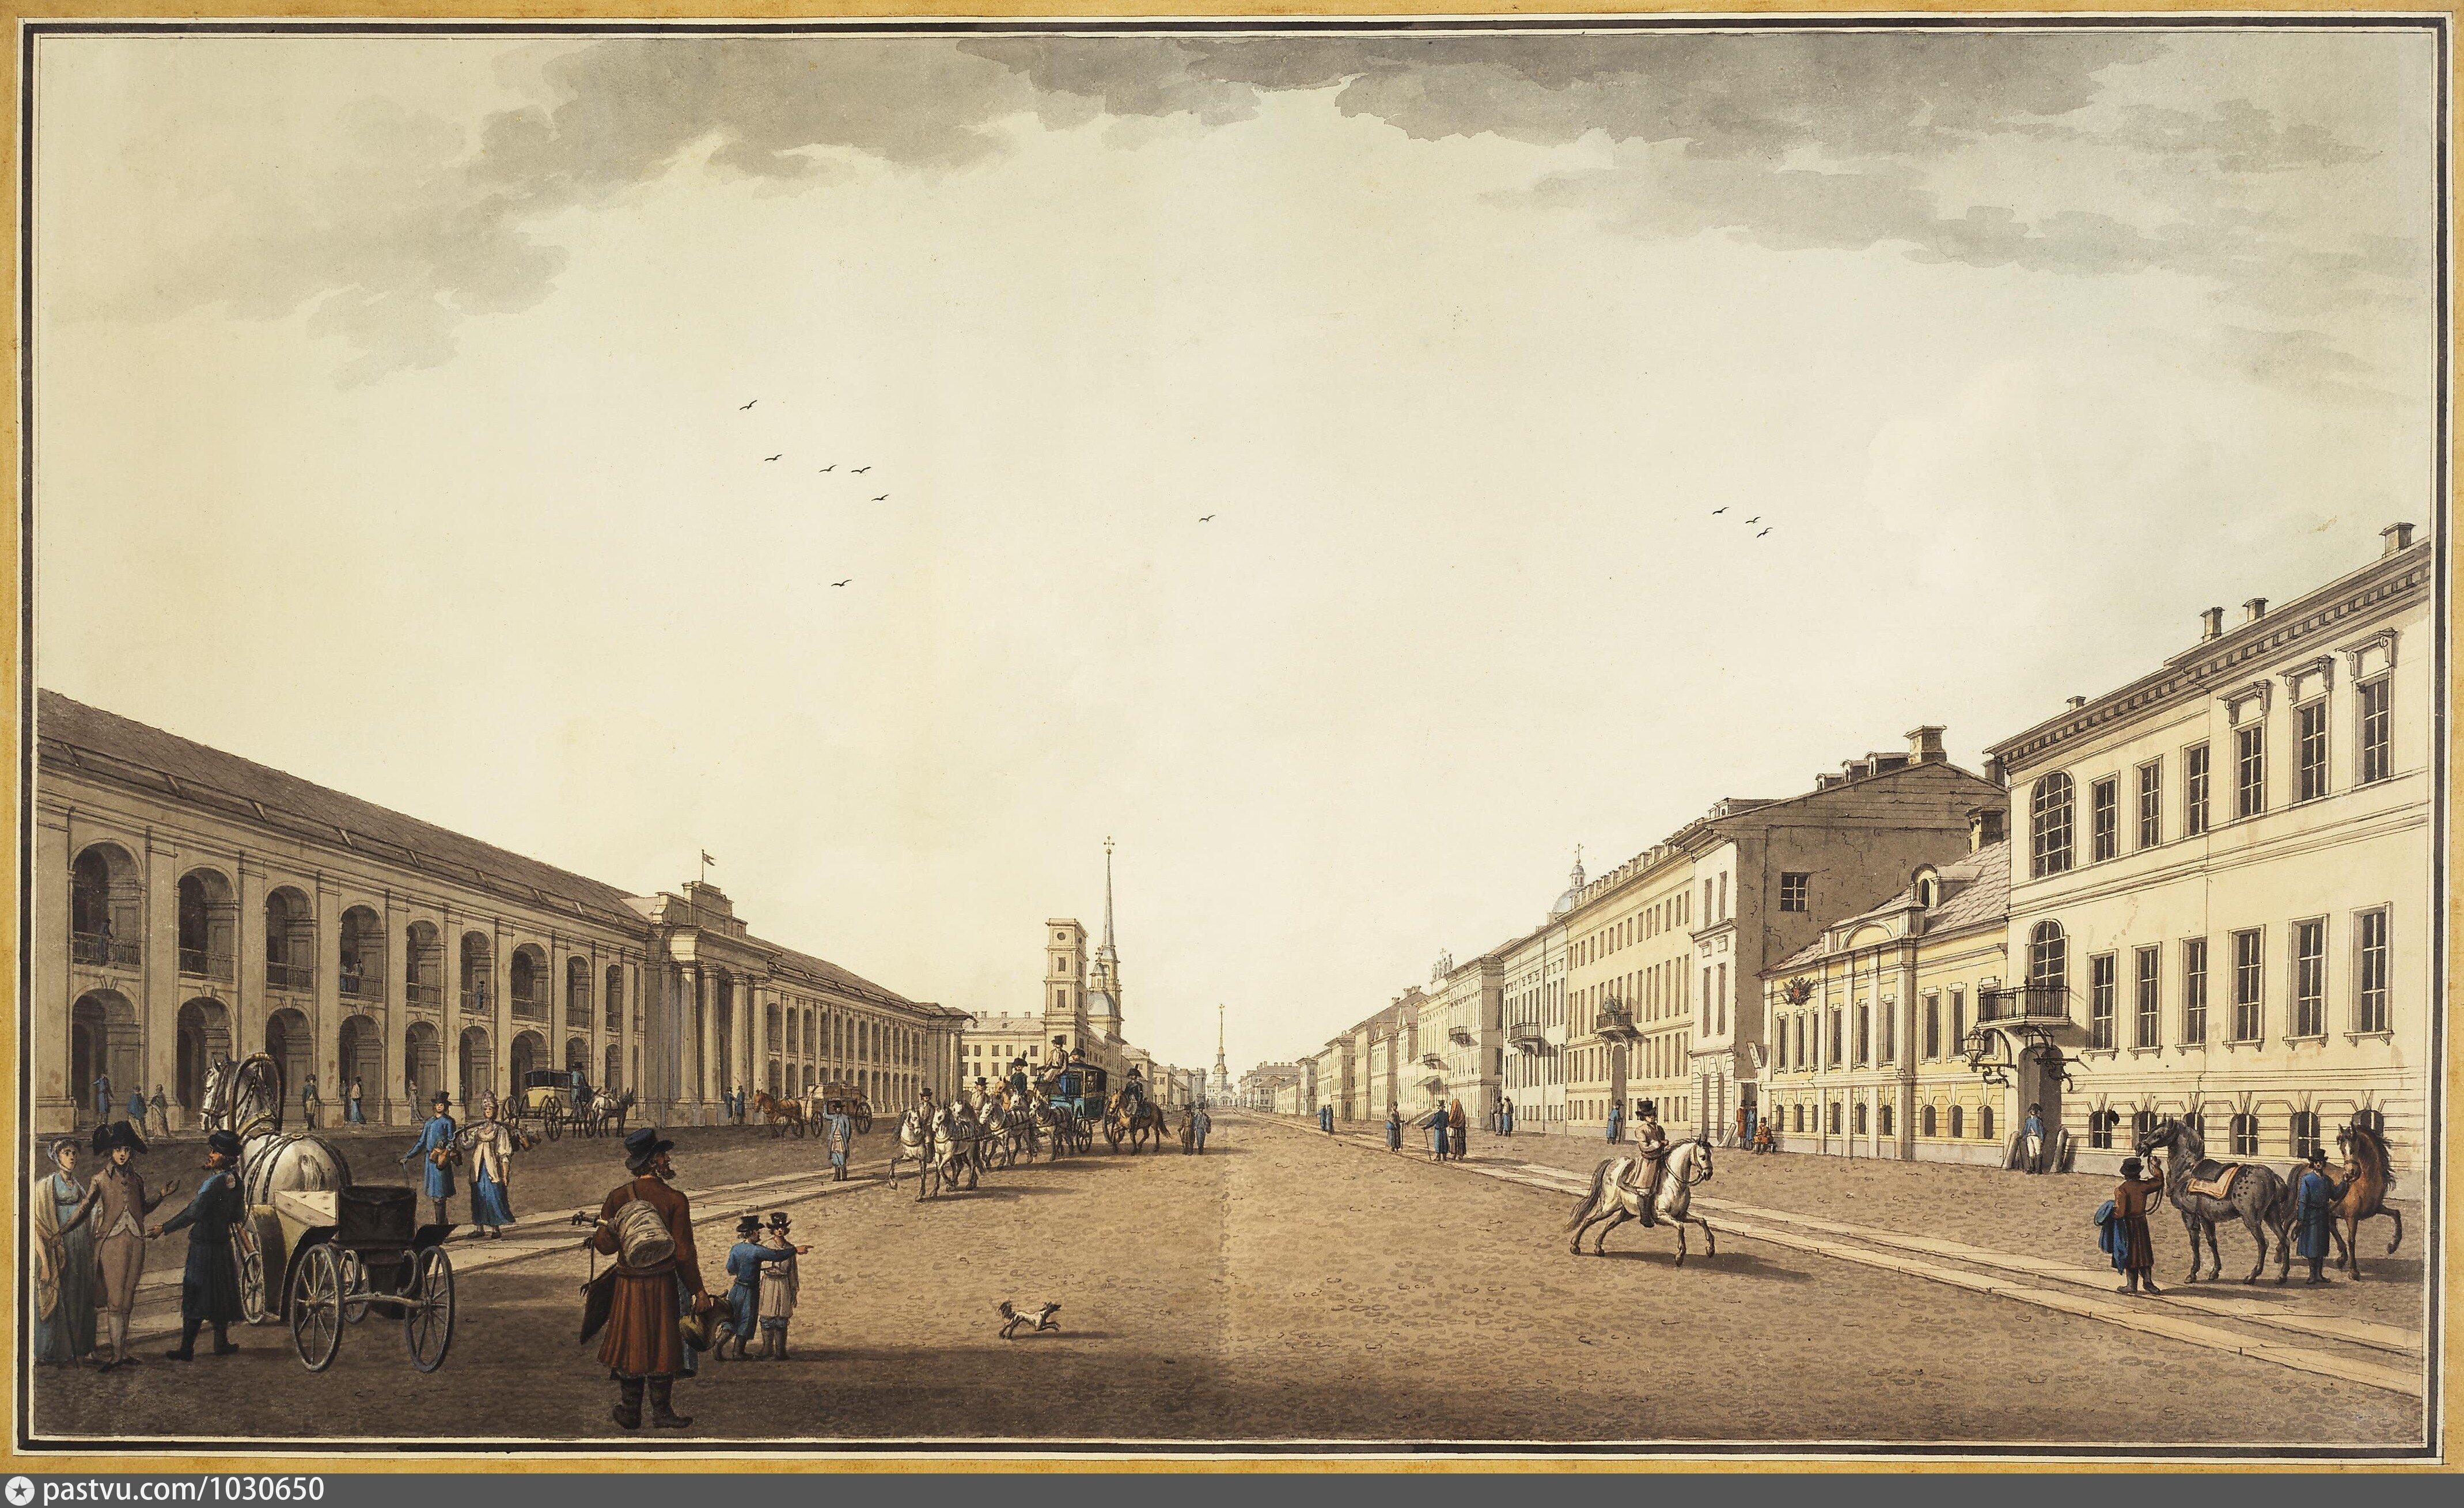 Спб 1700. Гостиный двор Санкт-Петербург 18-19 века.